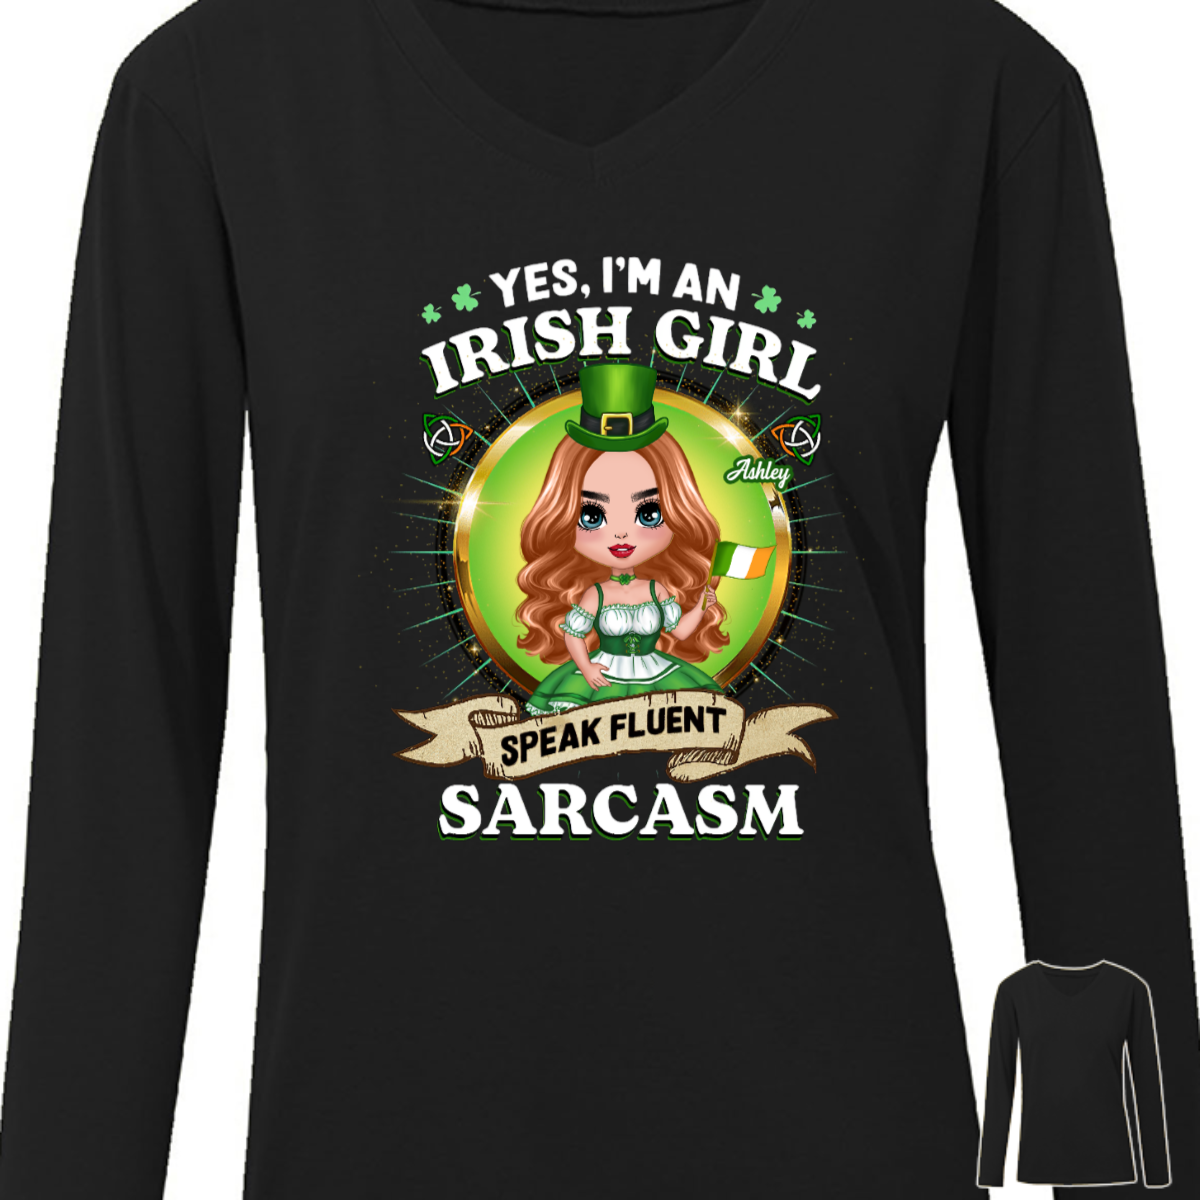 Irish Girl Speaks Fluent Sarcasm Personalized Long Sleeve Shirt